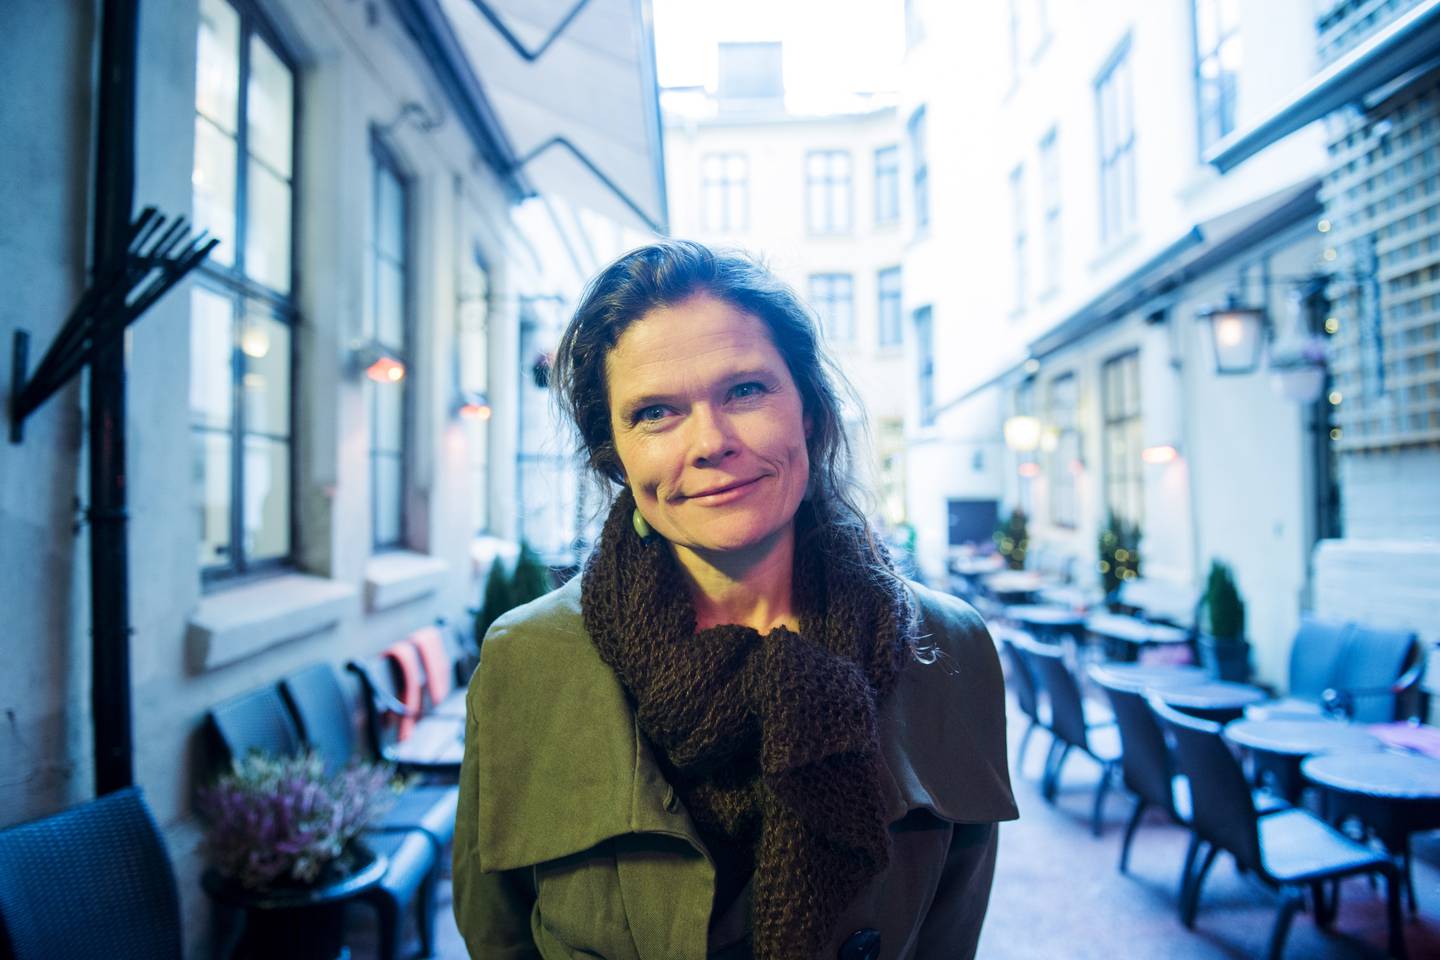 Forsker Cecilie Hellestveit er kritisk til Amnestys forståelse av folkeretten. 
Foto: Fredrik Varfjell / NTB